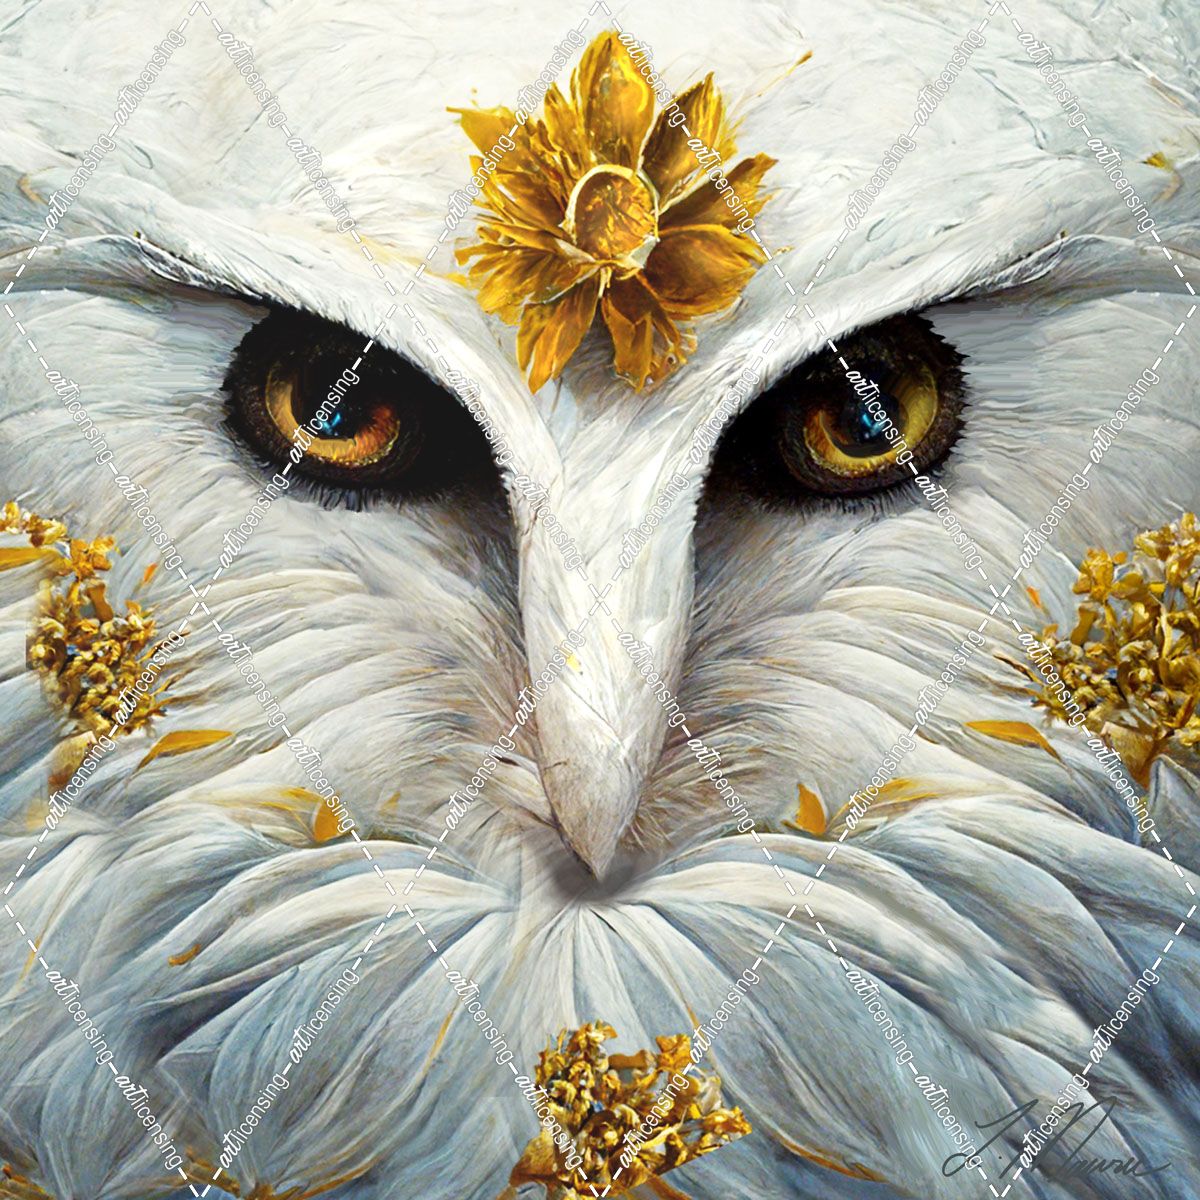 Snowy White Owl